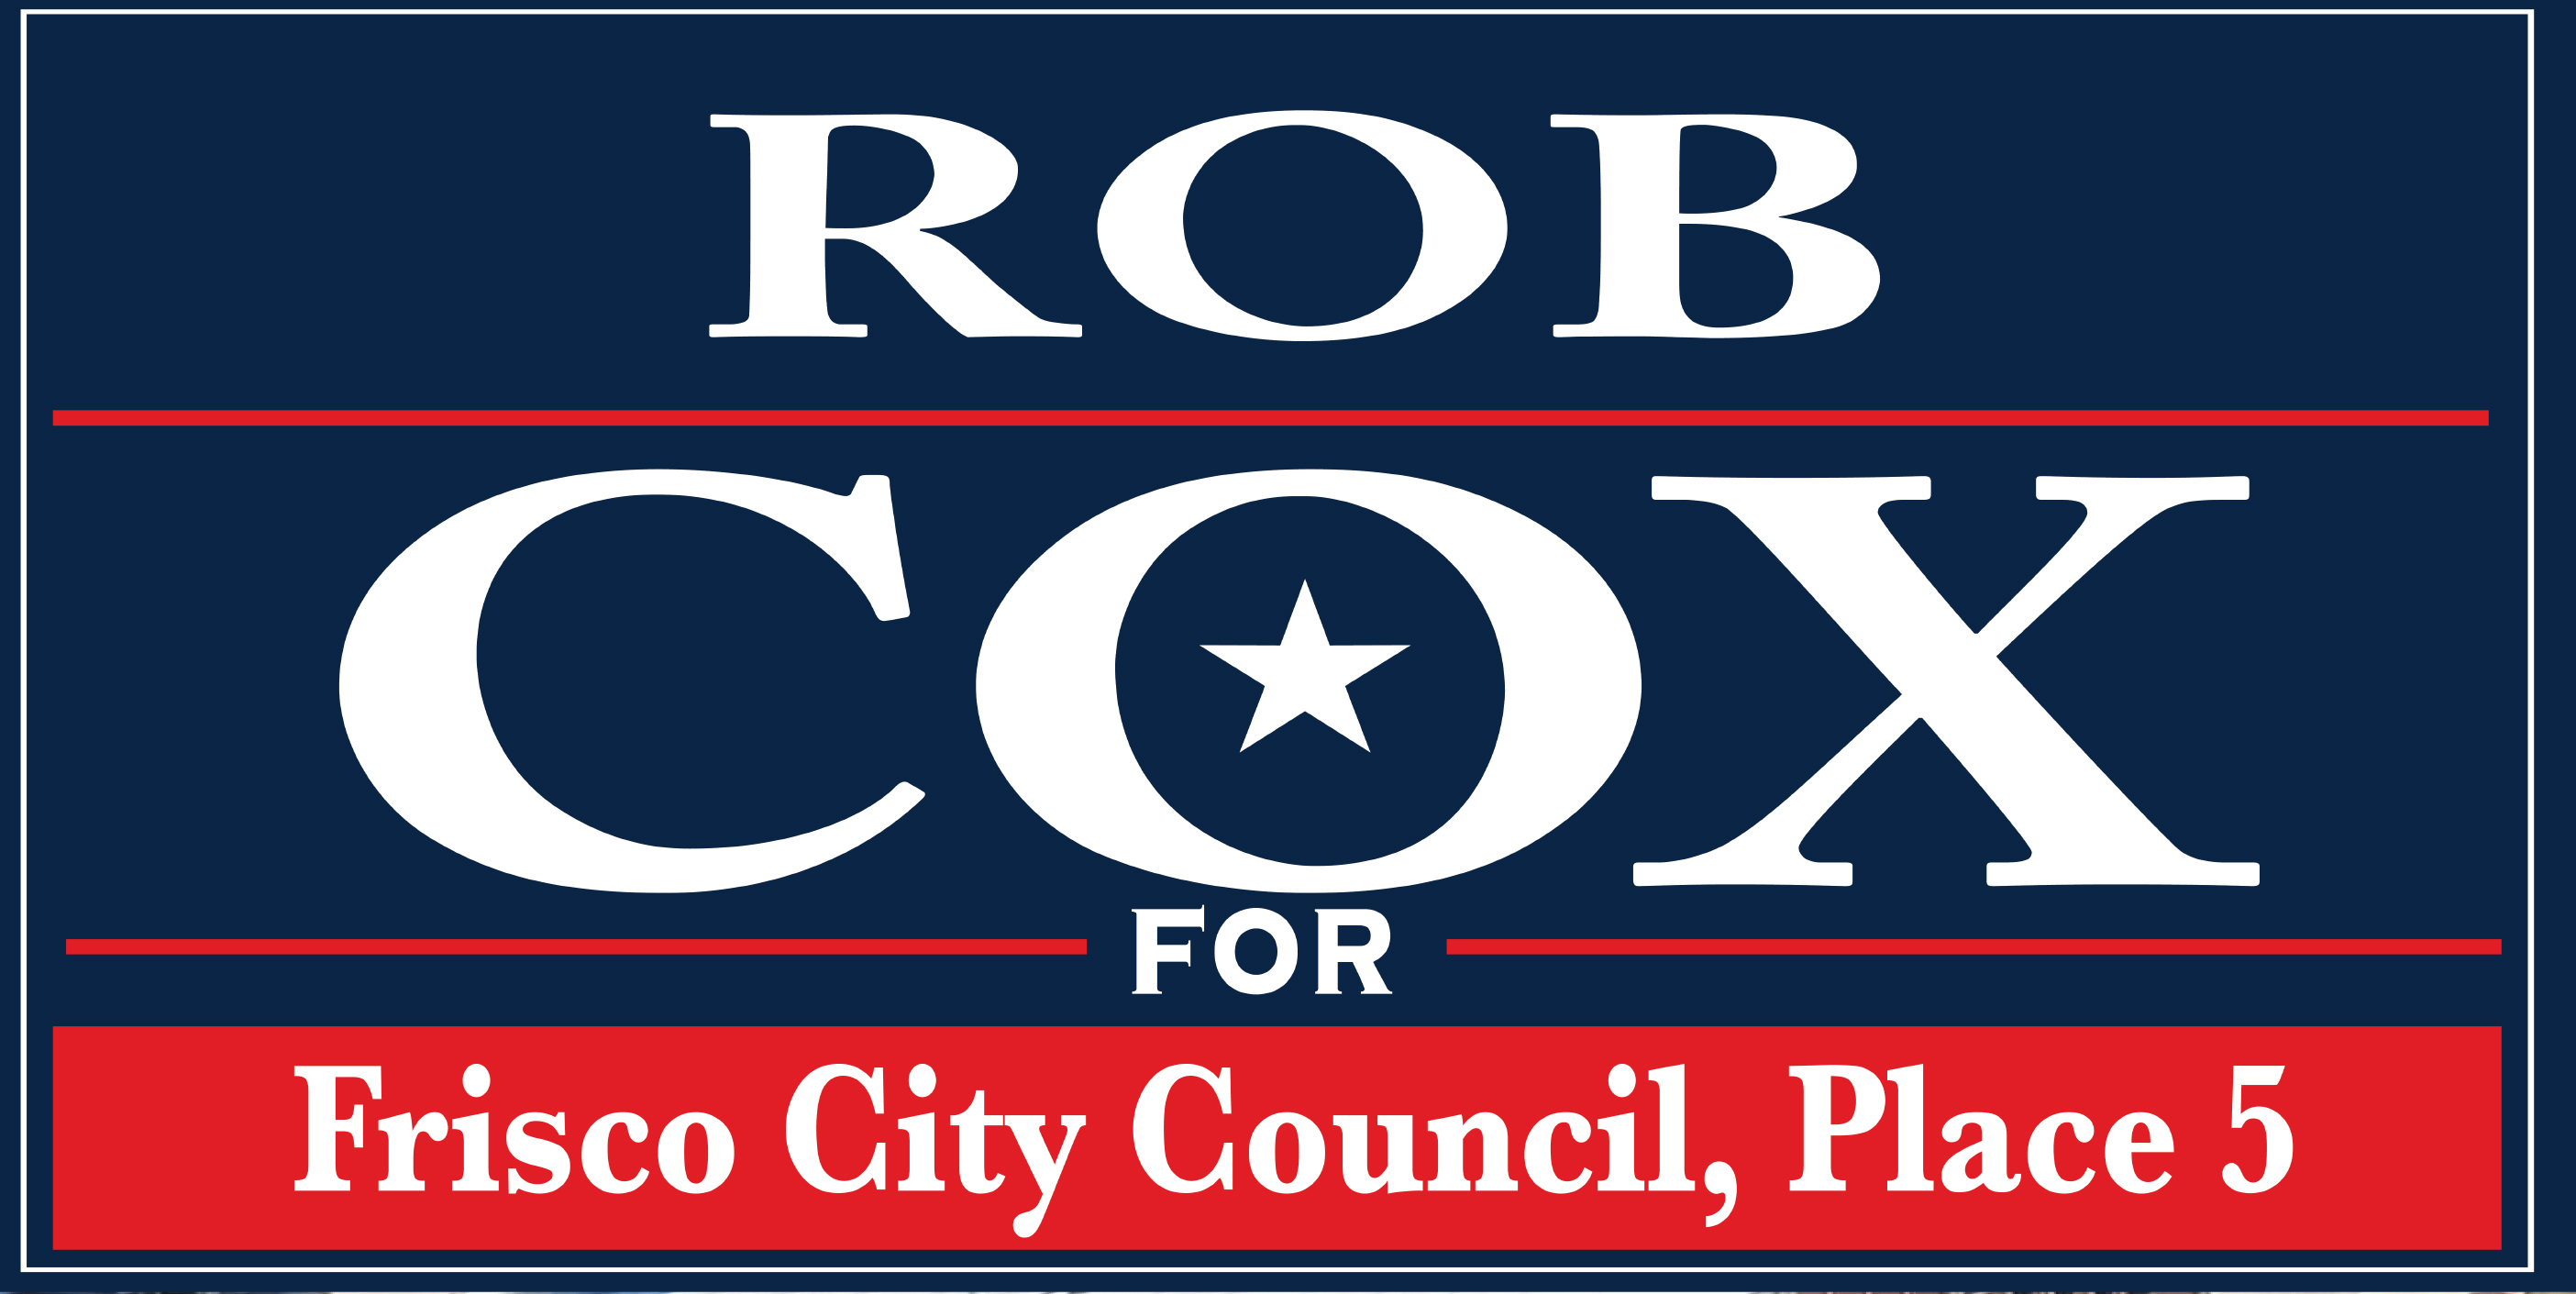 Rob Cox For Frisco logo